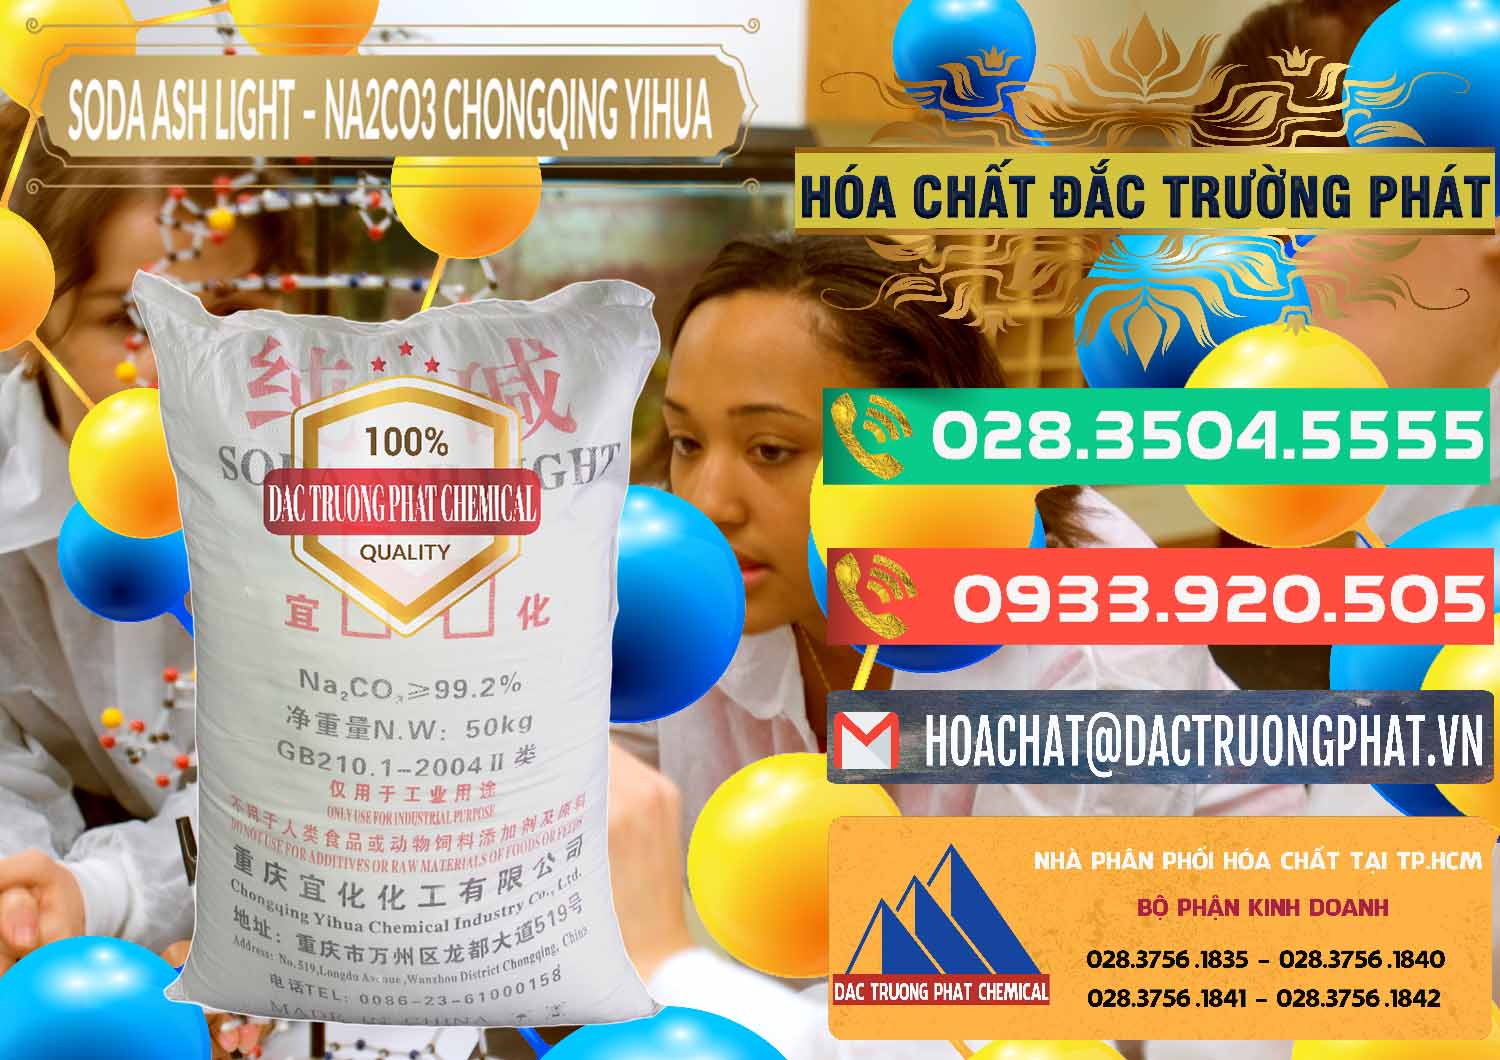 Nơi phân phối & bán Soda Ash Light - NA2CO3 Chongqing Yihua Trung Quốc China - 0129 - Nơi phân phối ( cung cấp ) hóa chất tại TP.HCM - congtyhoachat.com.vn